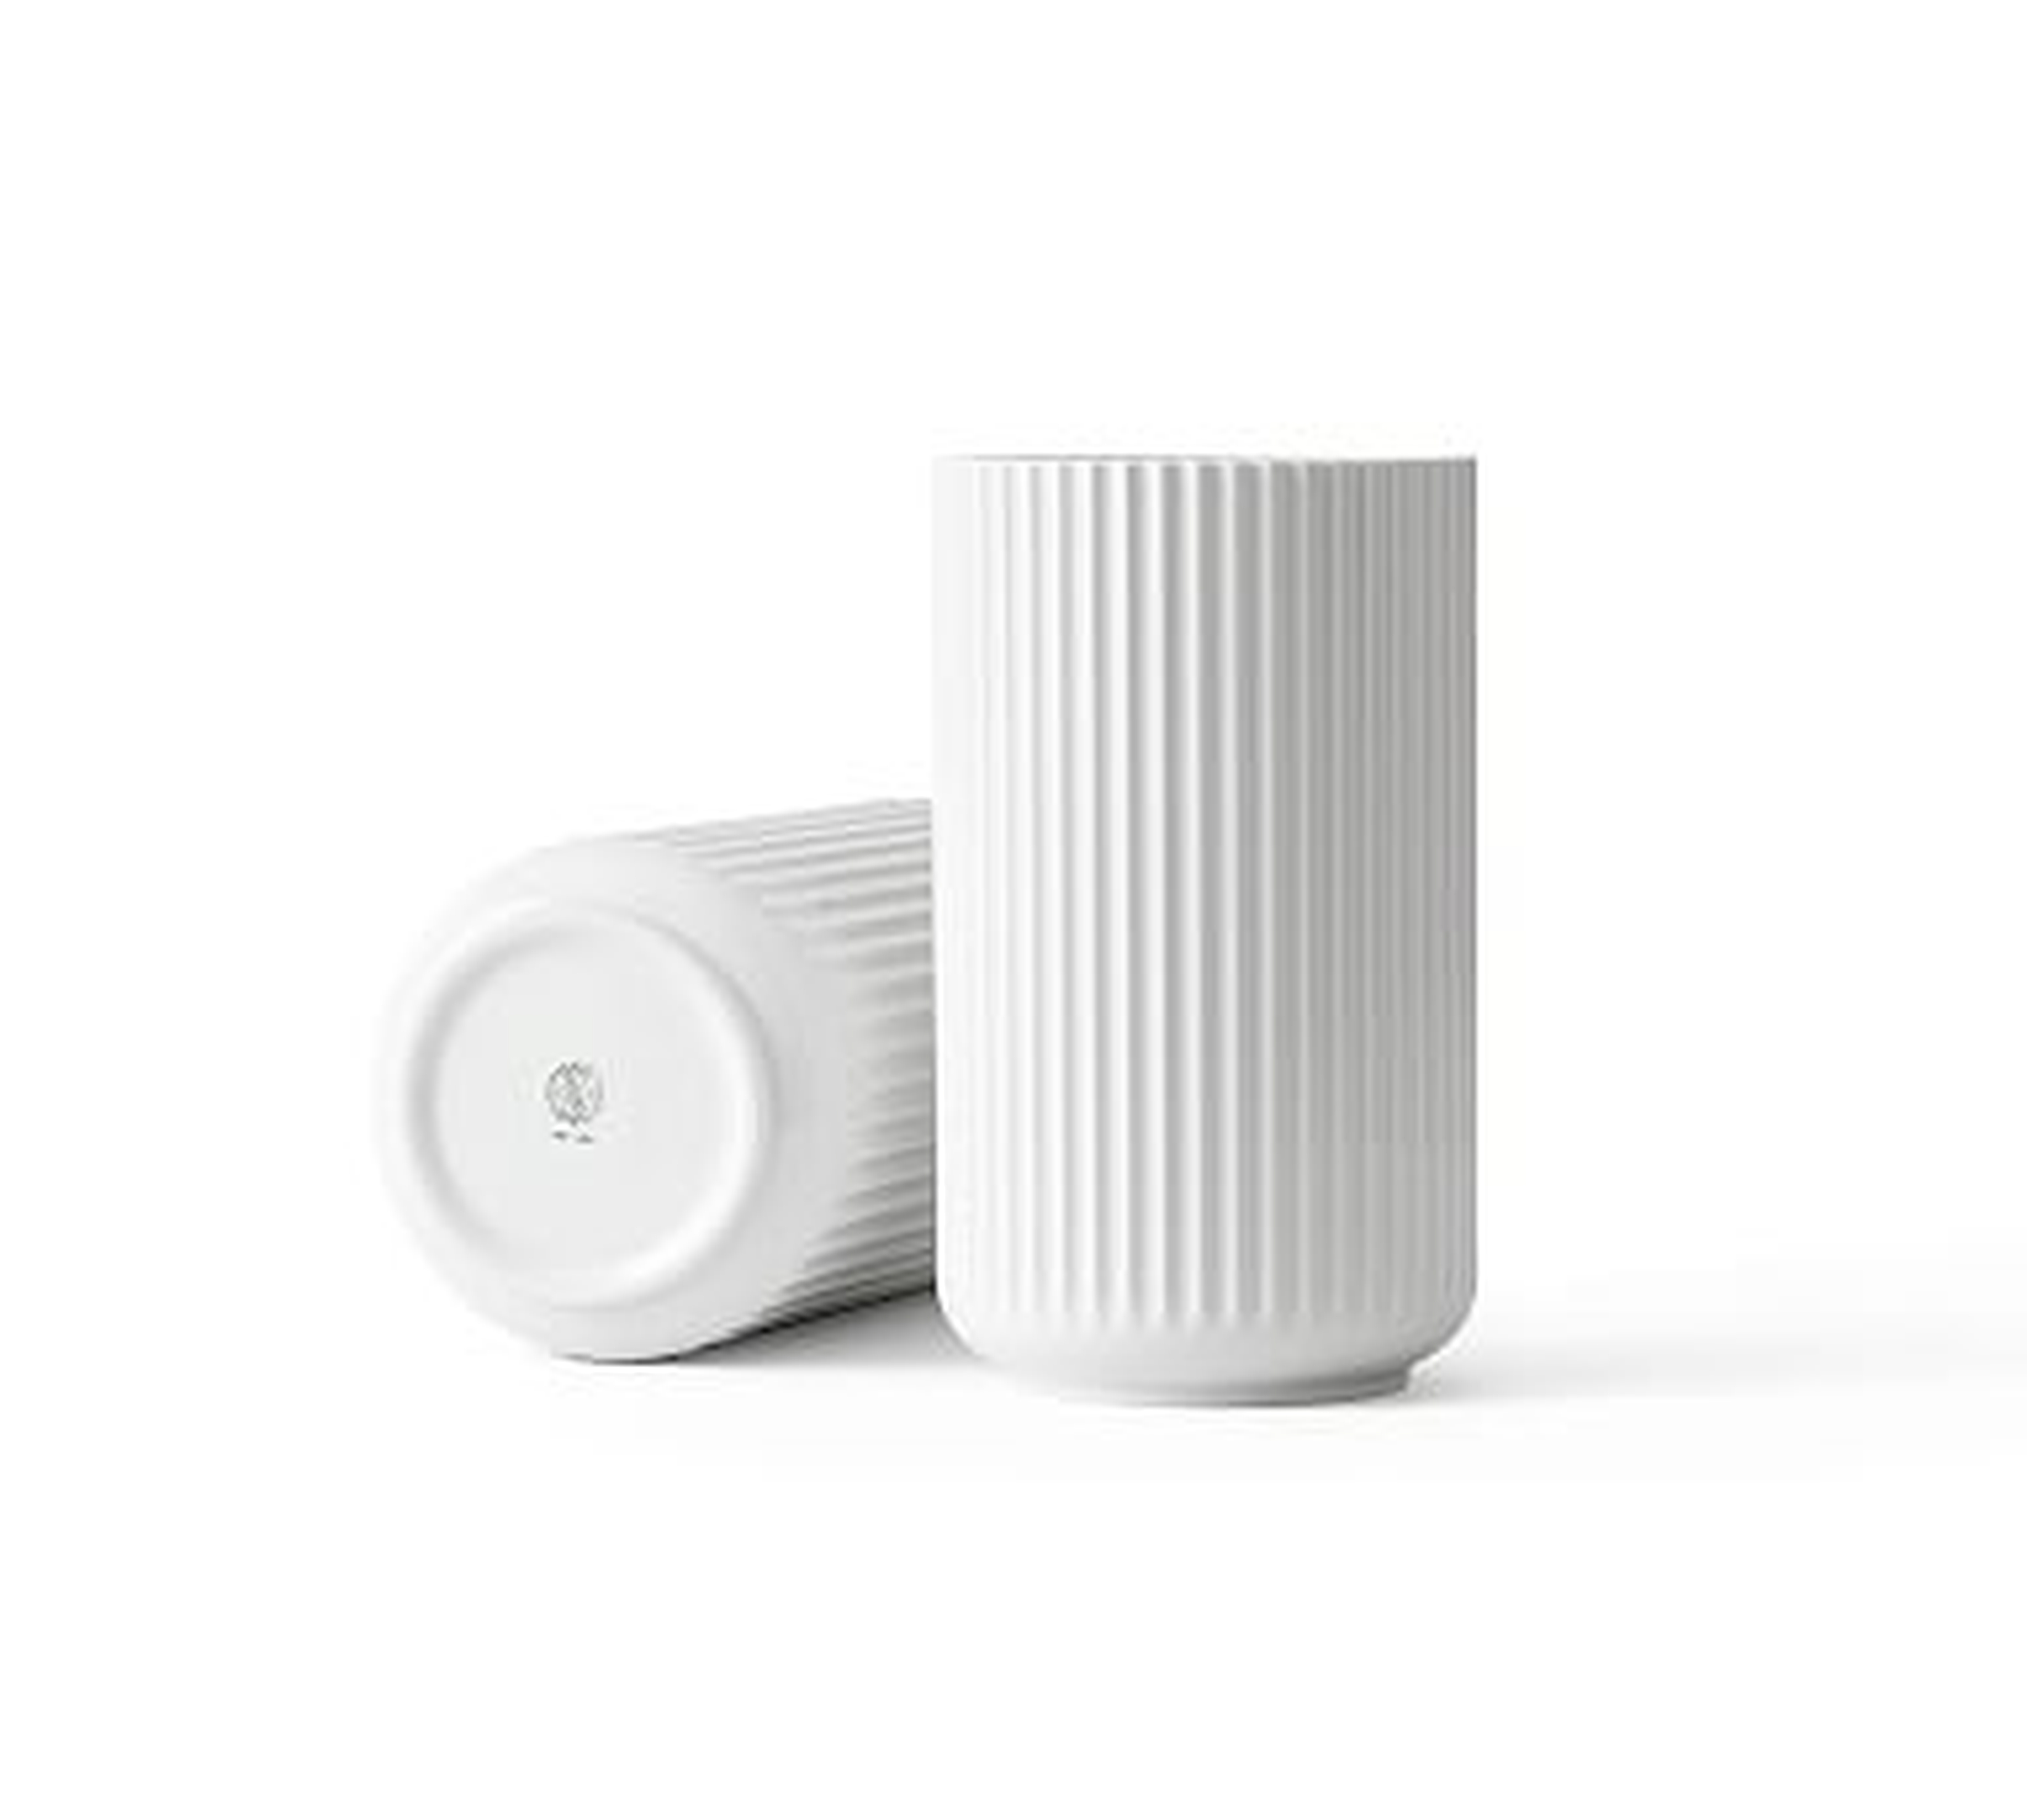 Lyngby Porcelain Vases, Medium, White - Pottery Barn